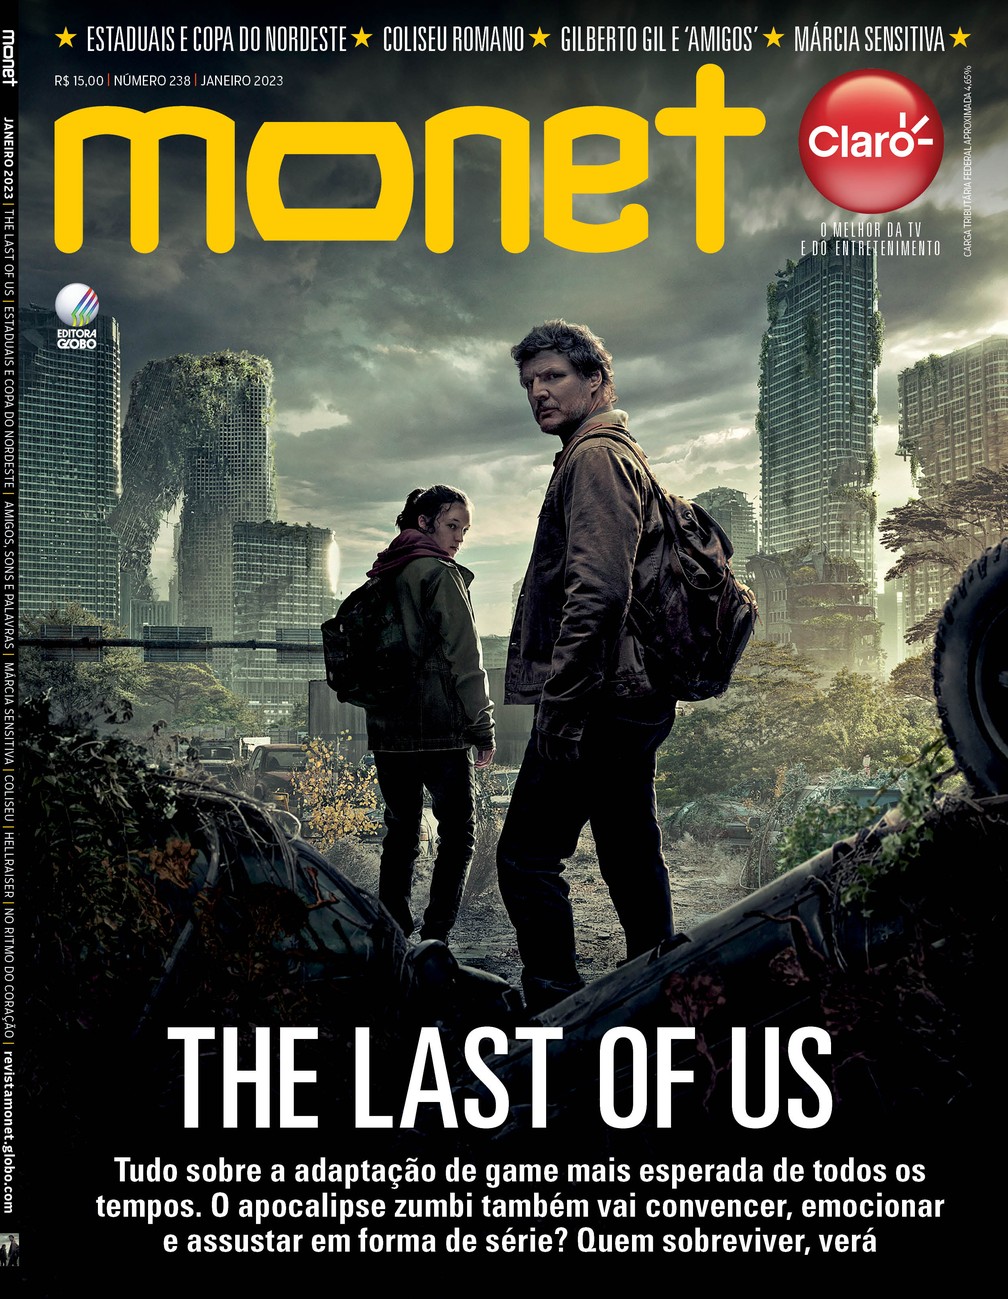 Janeiro na MONET: The Last of Us - Jogo para Assistir, Revista